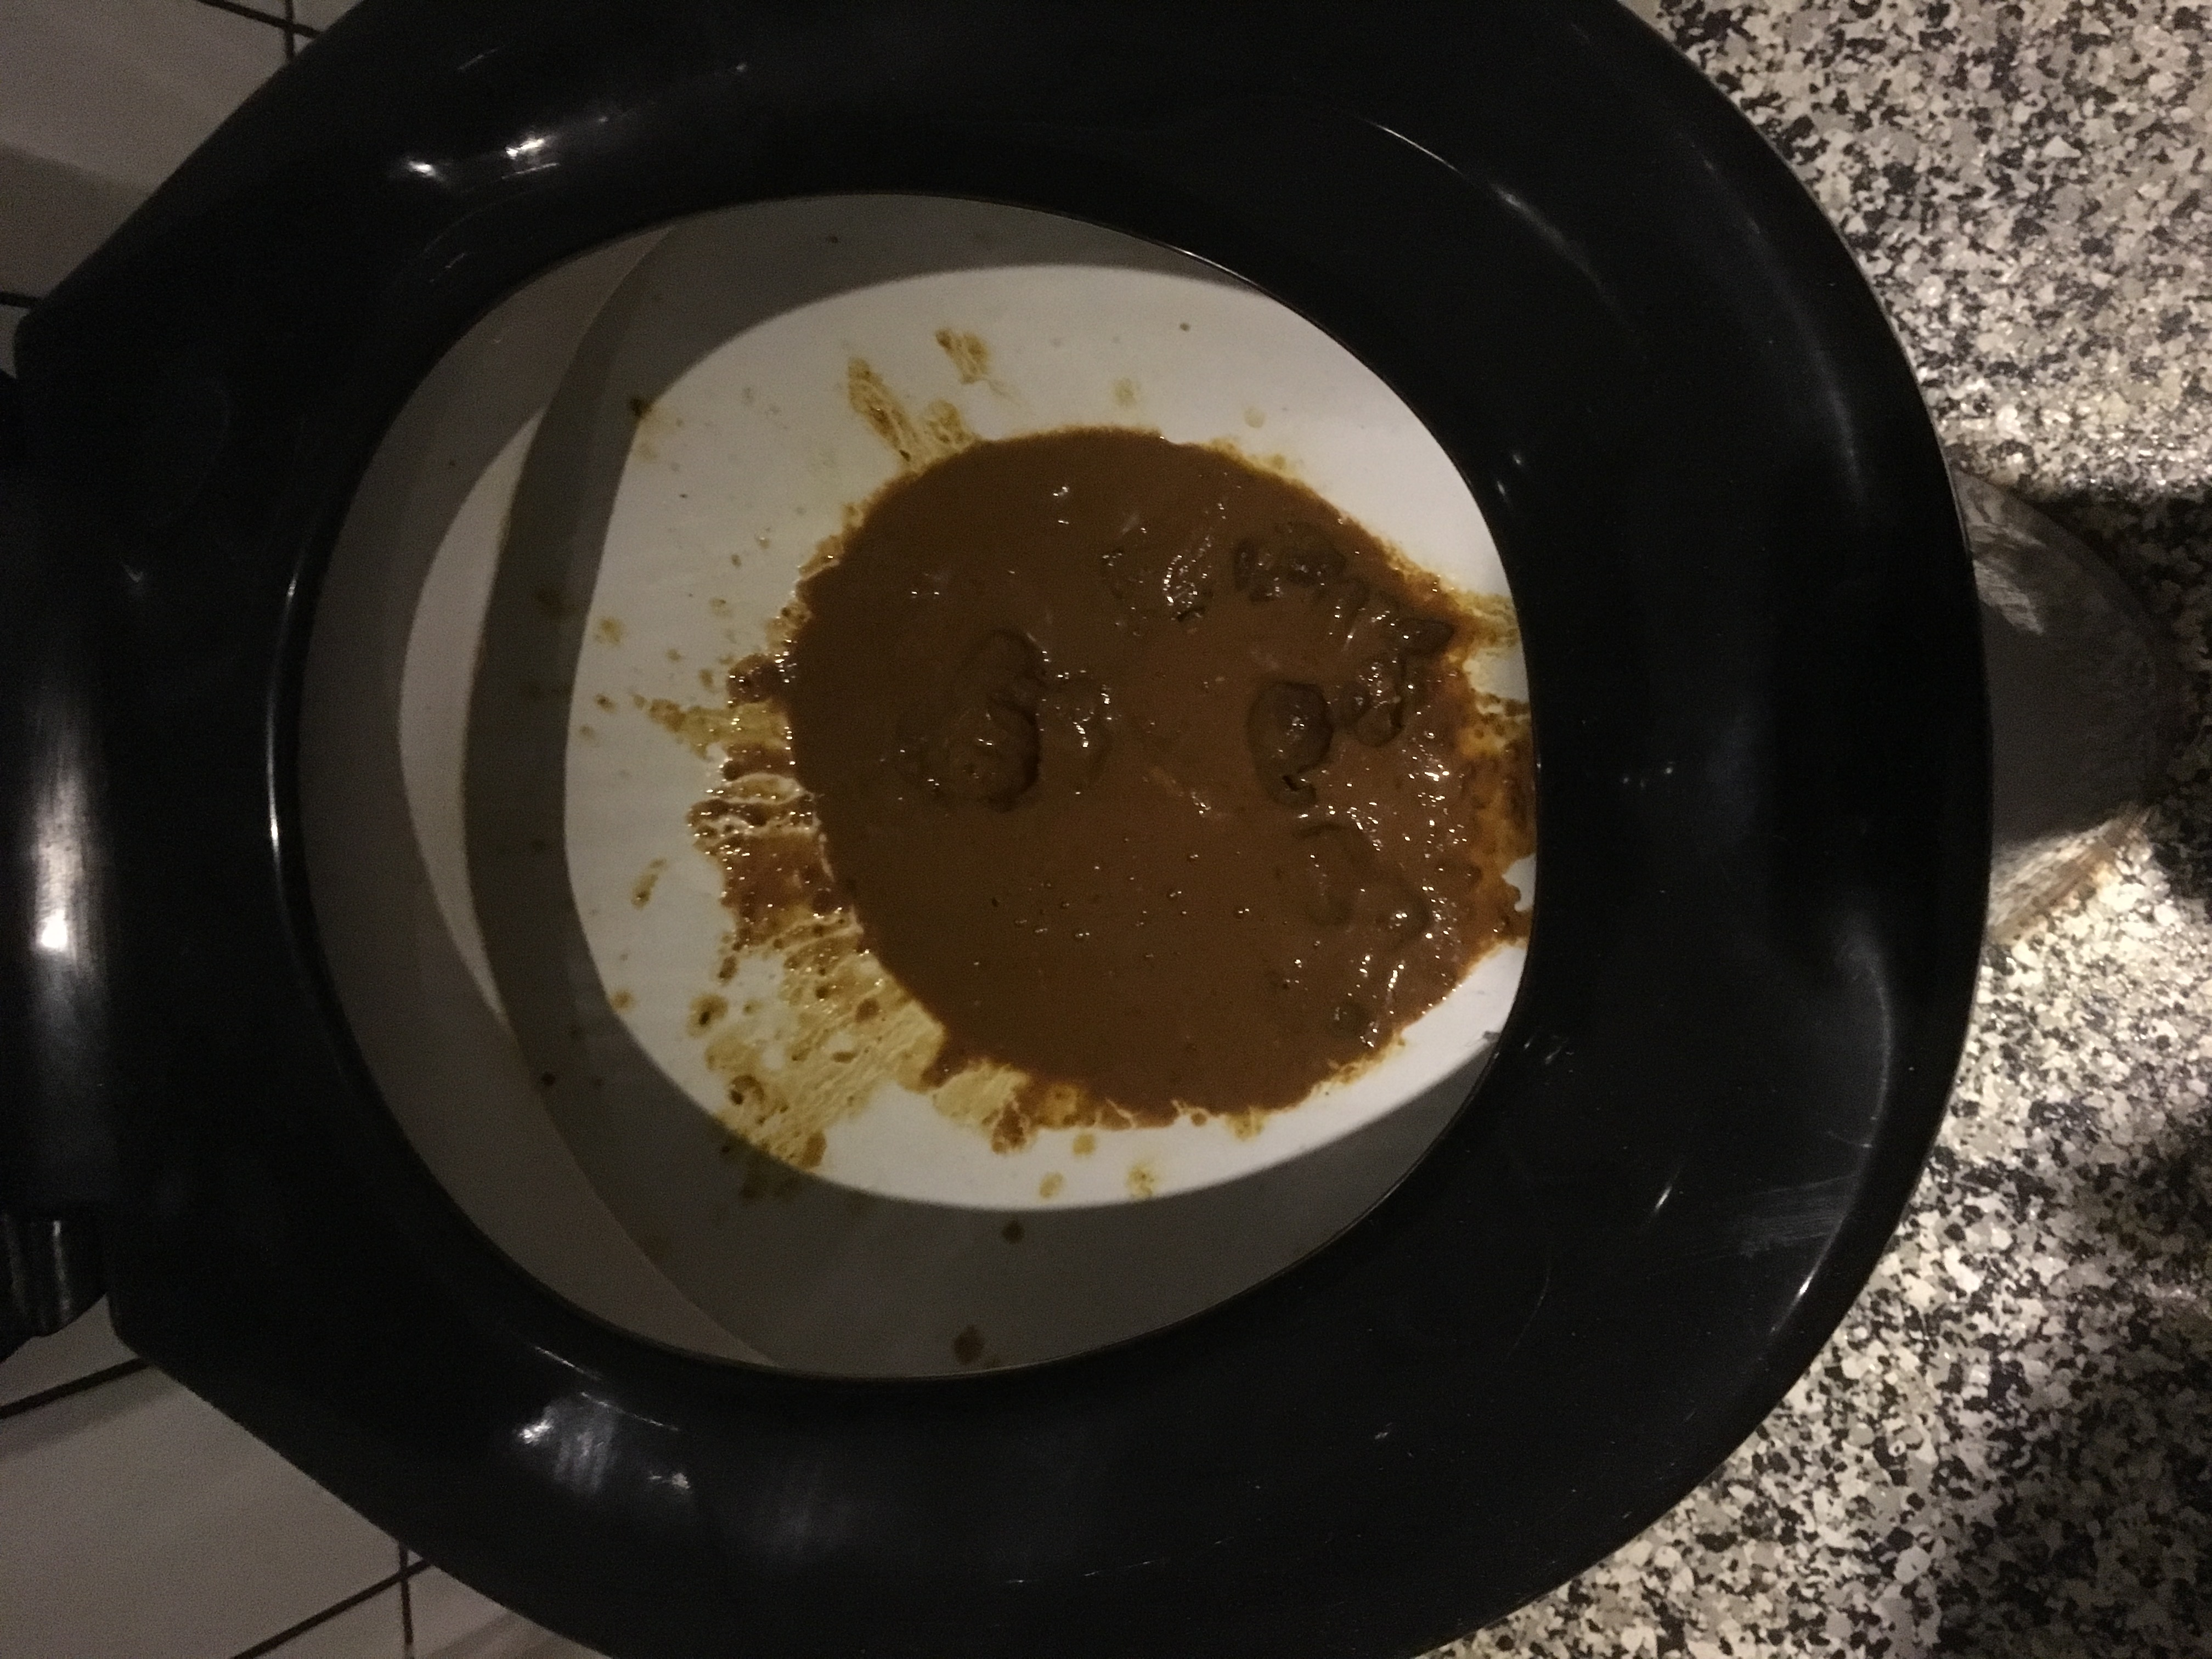 diarrhea at home 09/16/2017